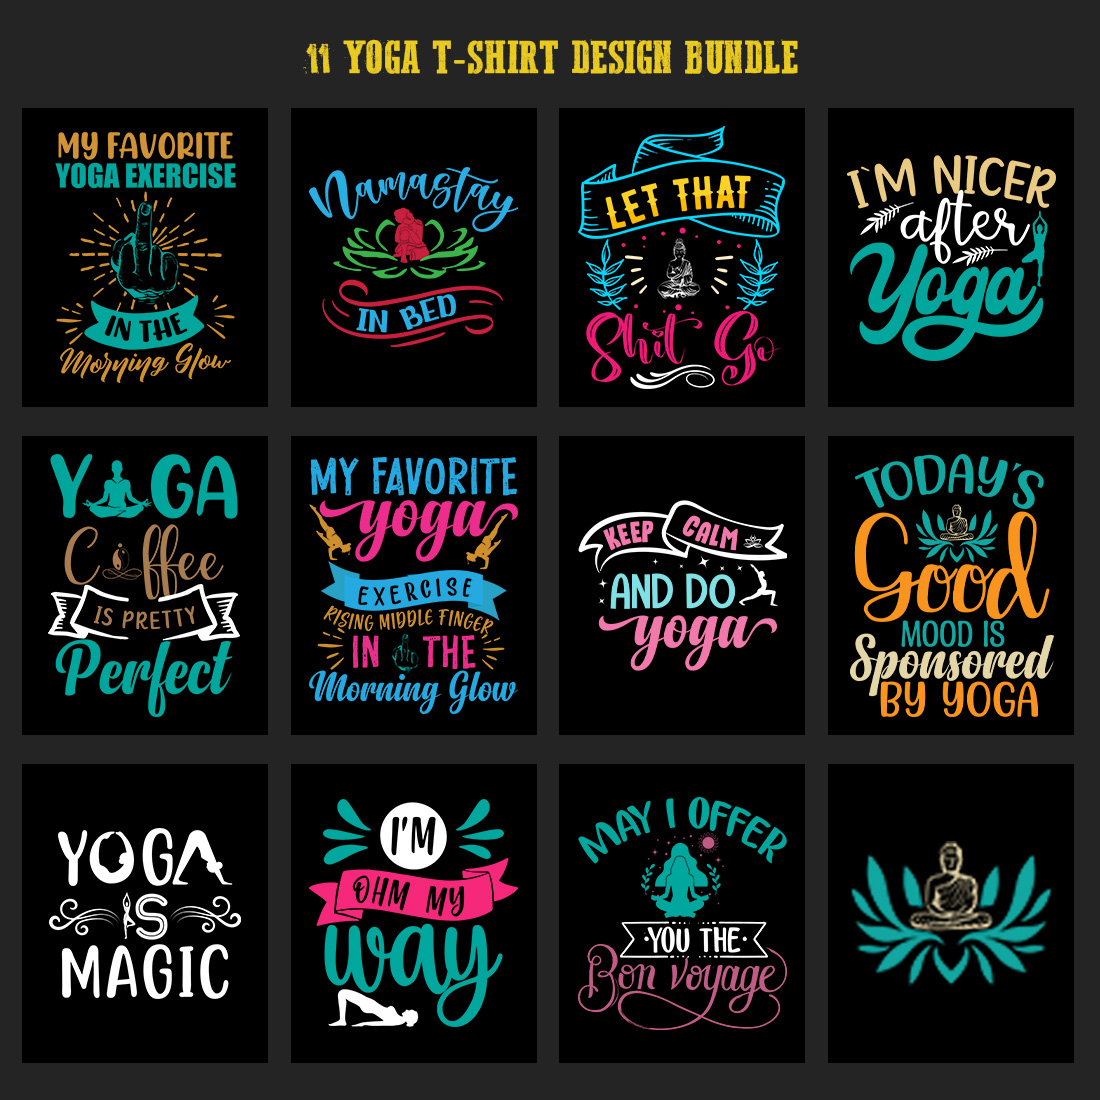 Yoga T-shirt design Bundle preview image.